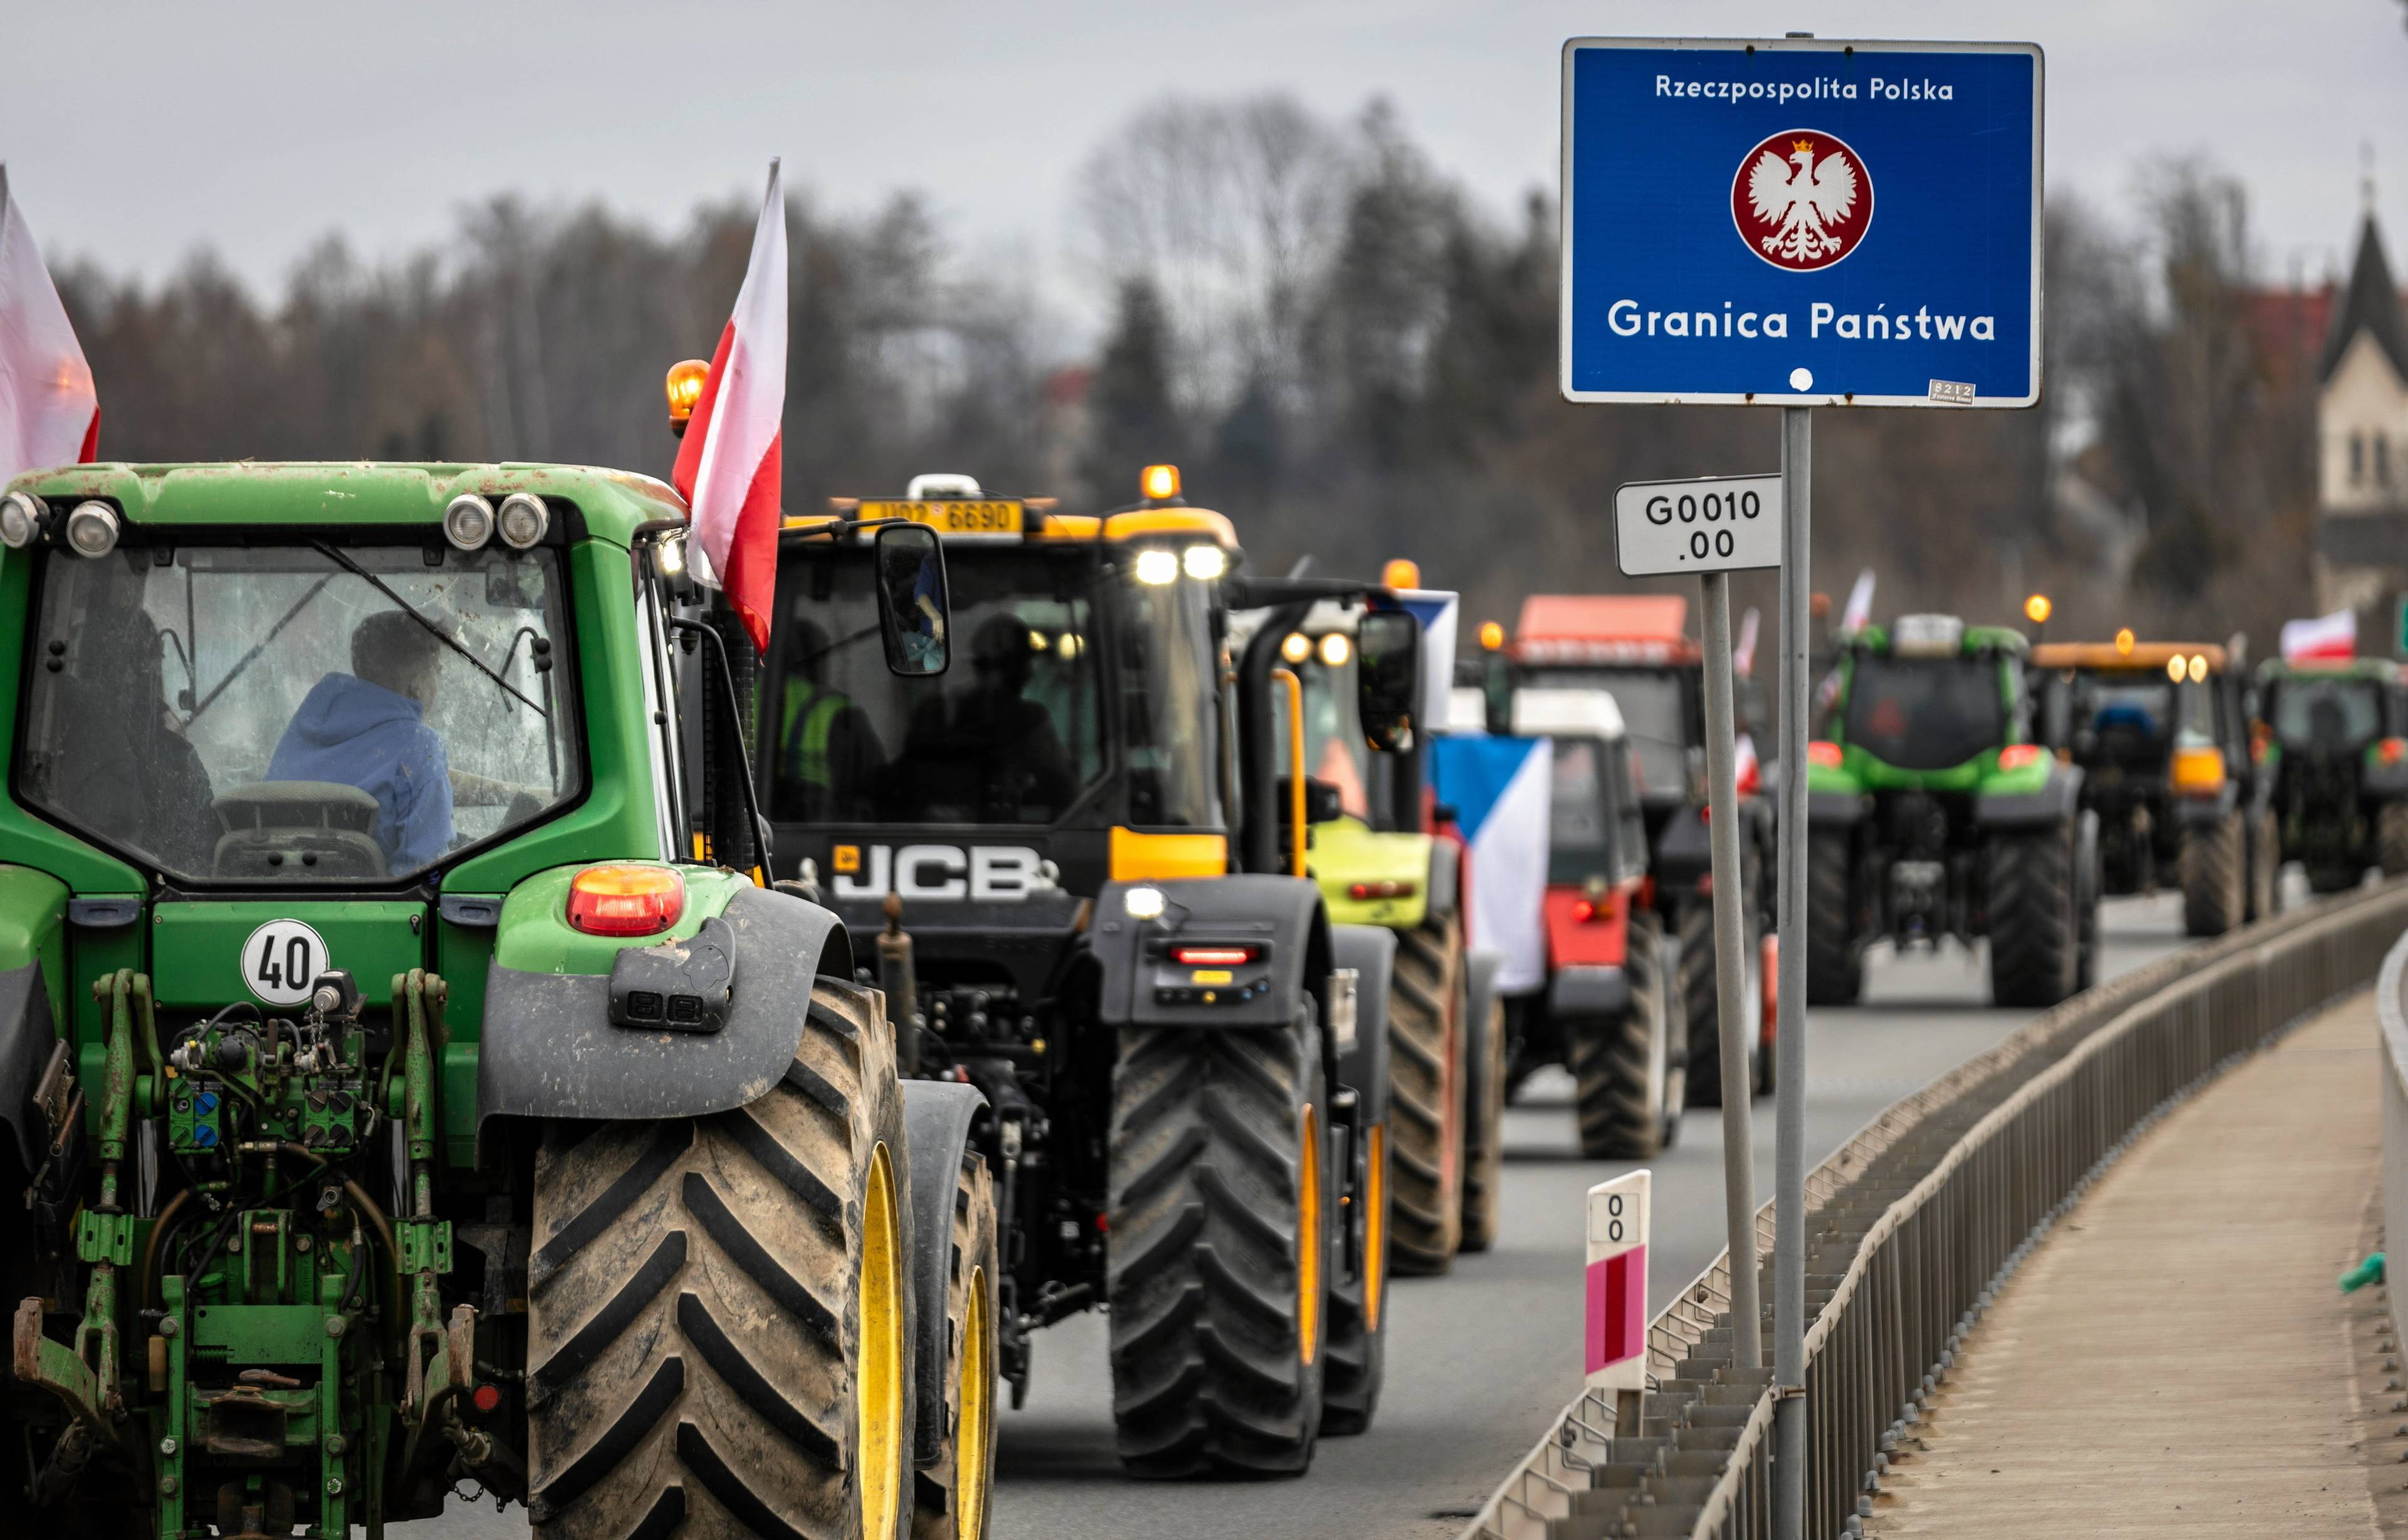 Traktory ustawione jeden za drugim na jezdni, przy drodze znak "granica państwa".